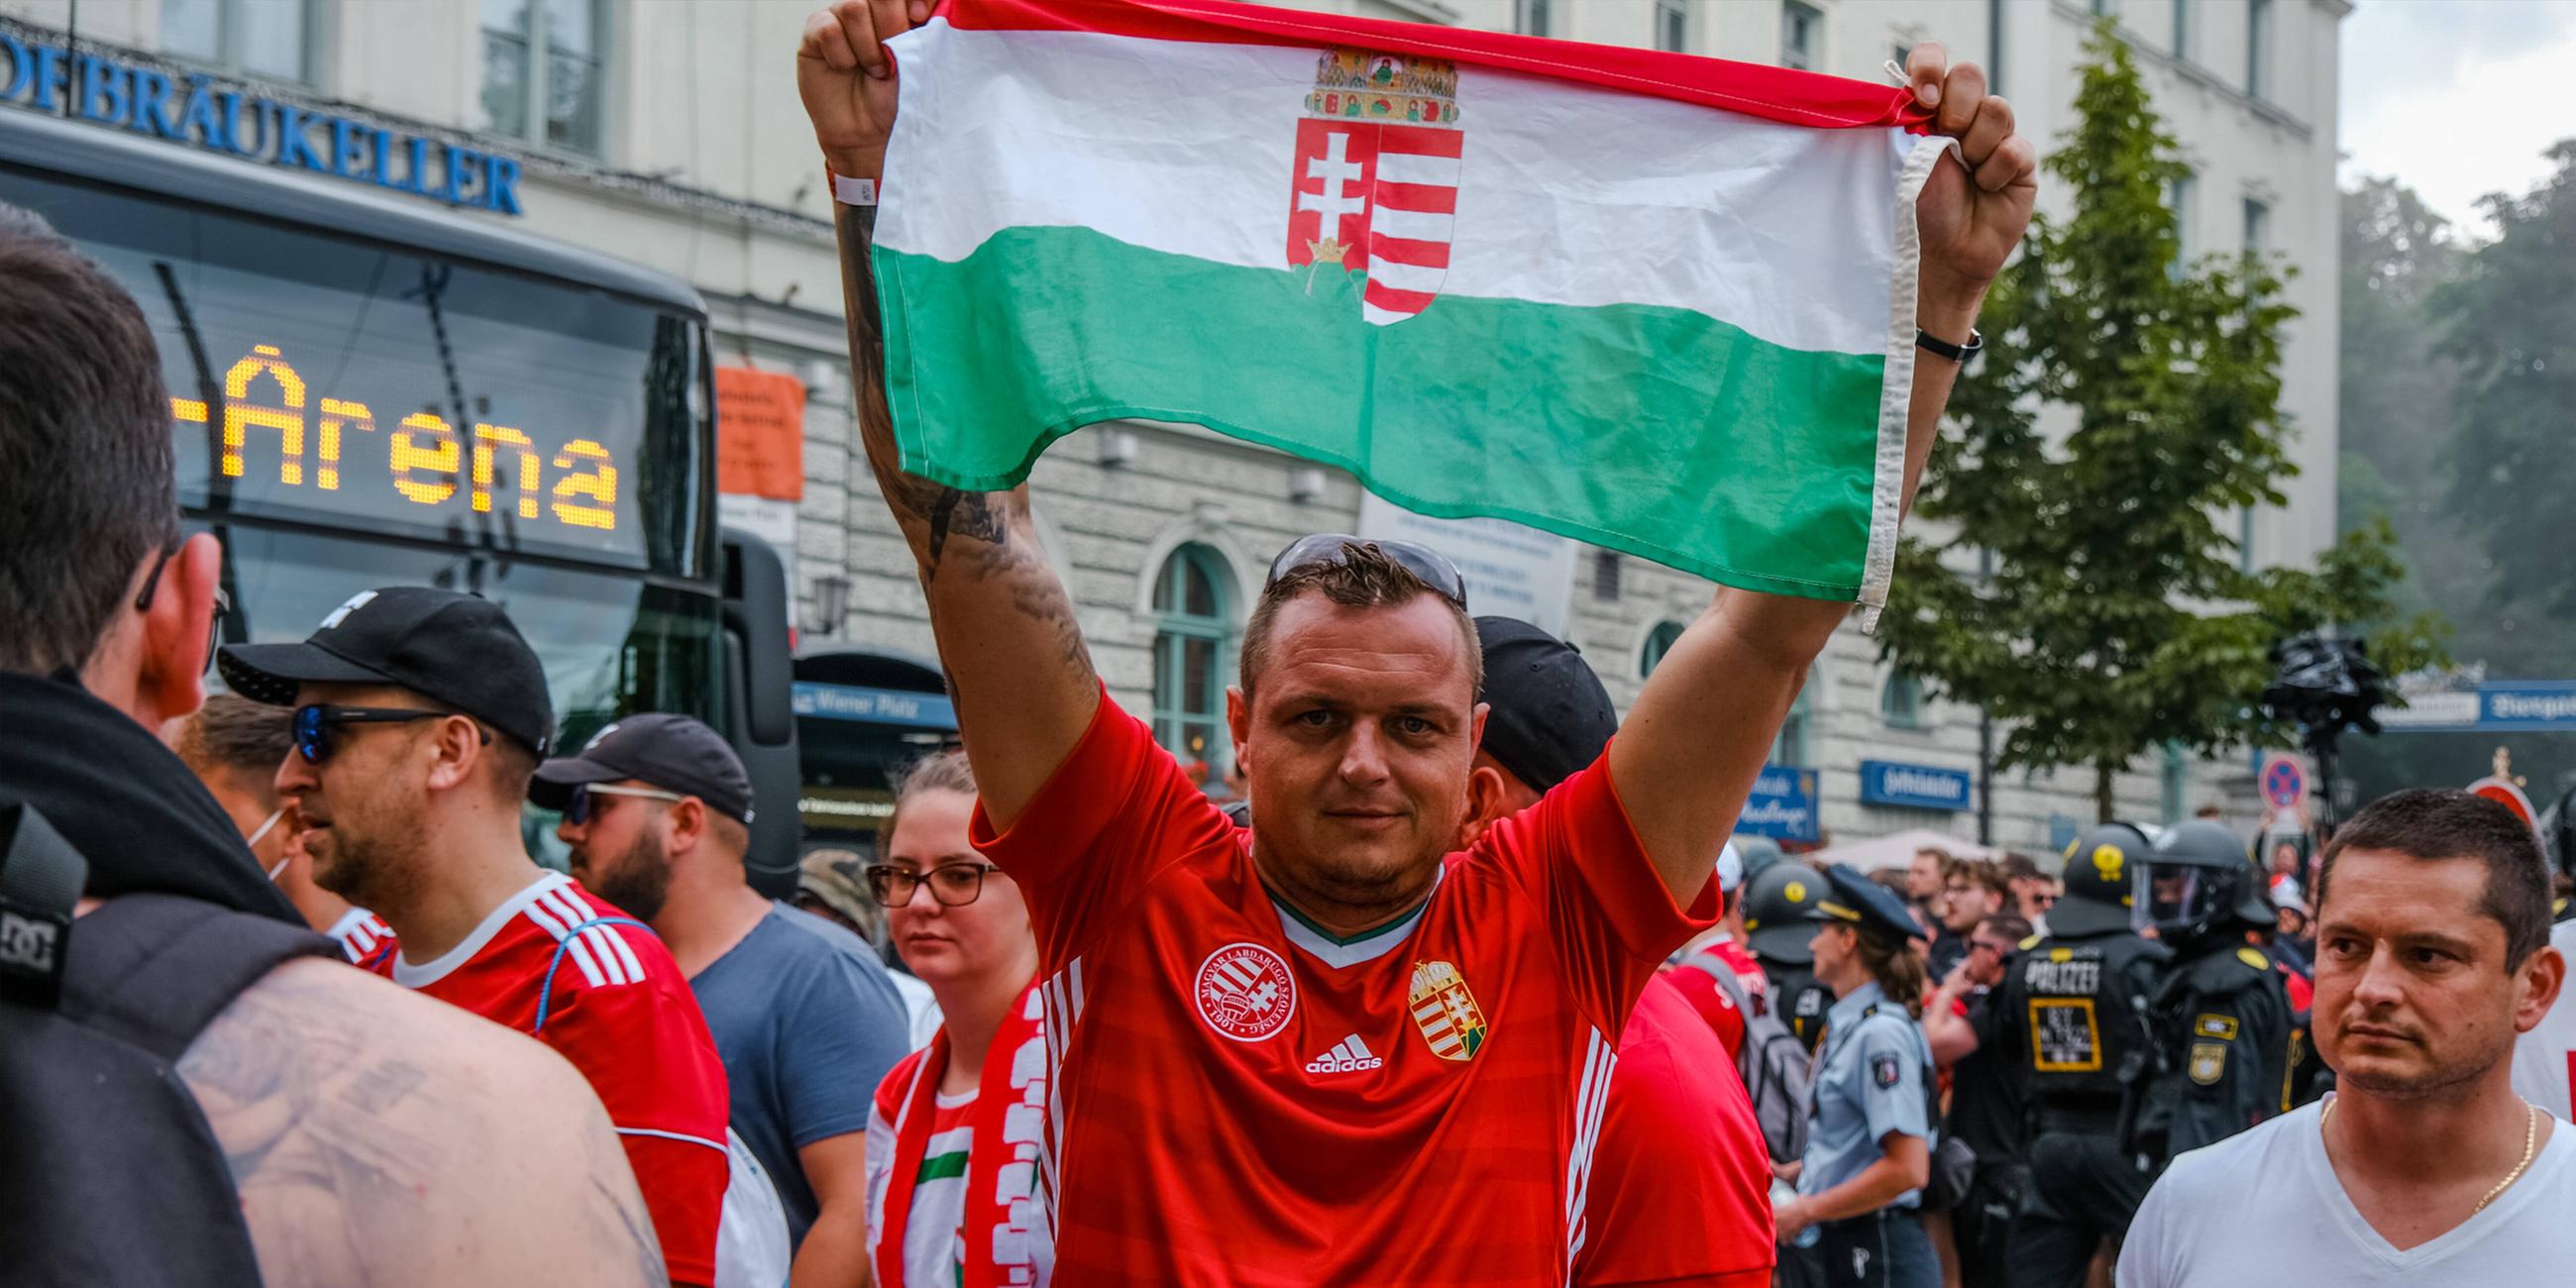 Archiv: Ungarische Fußballfans treffen sich, unter den meist friedlichen Fans waren auch einige Ultras der Carpathian Brigade. 